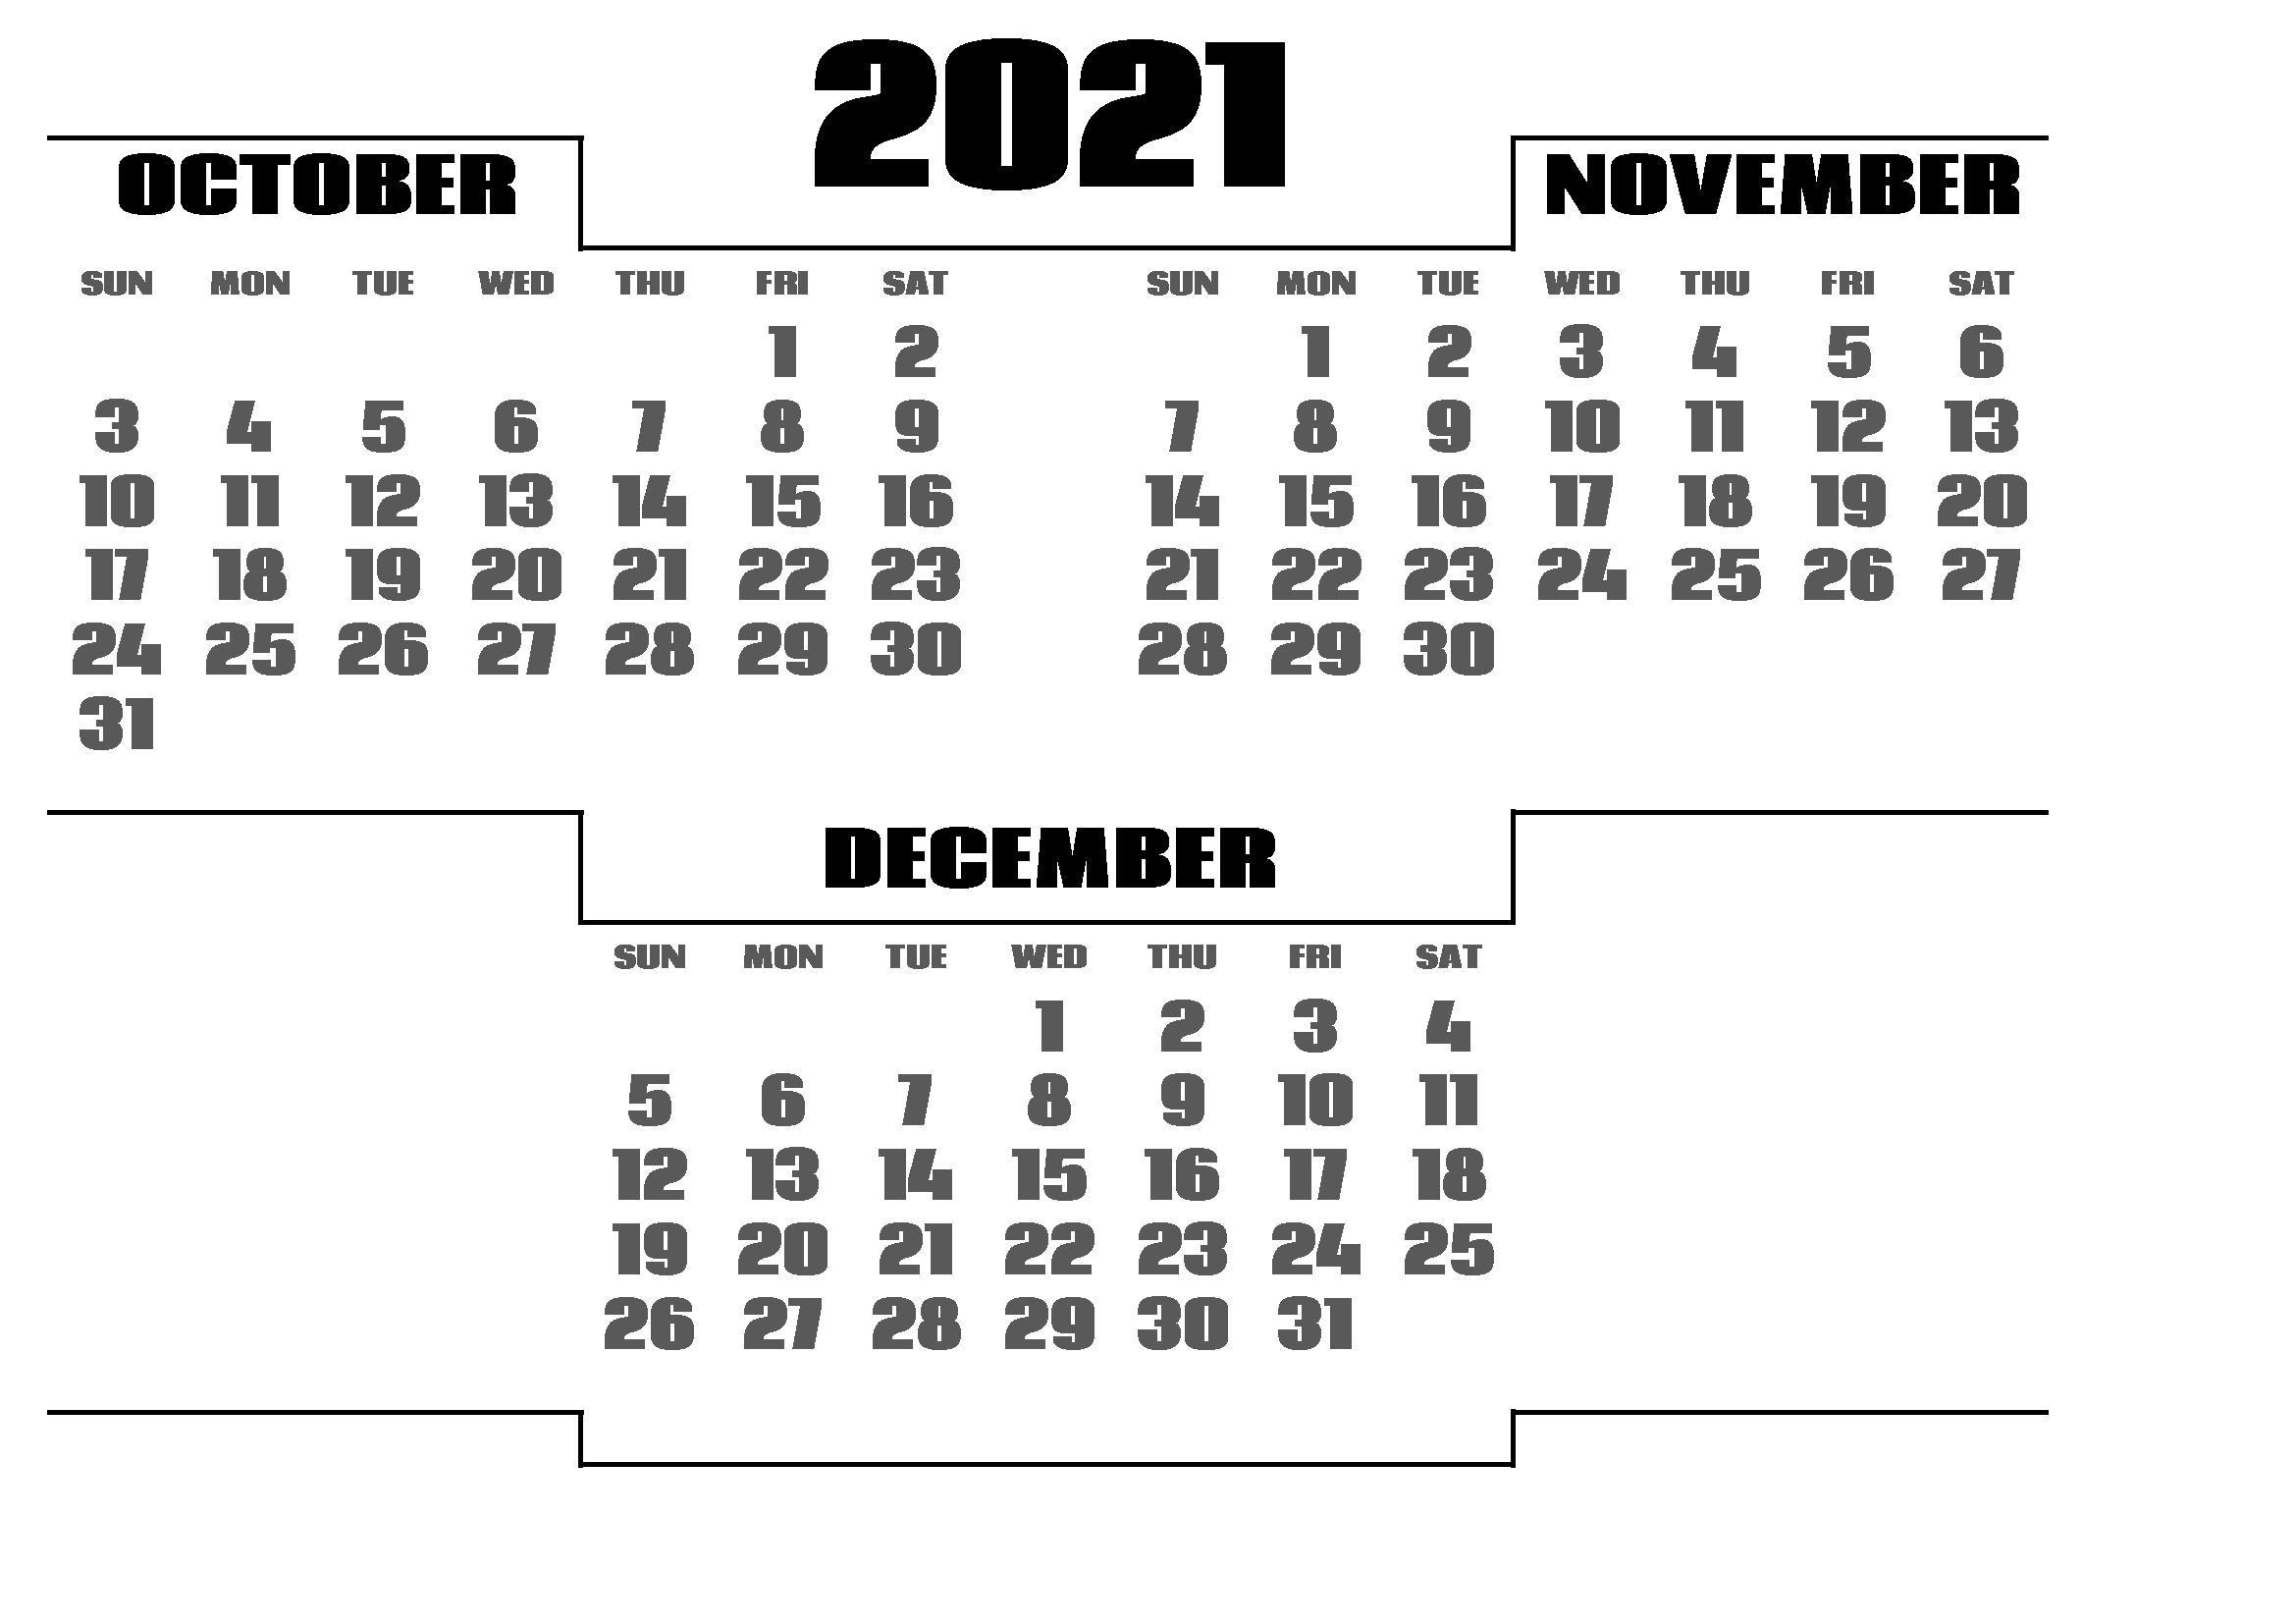 December 2021 Calendar Printable in Excel Grid